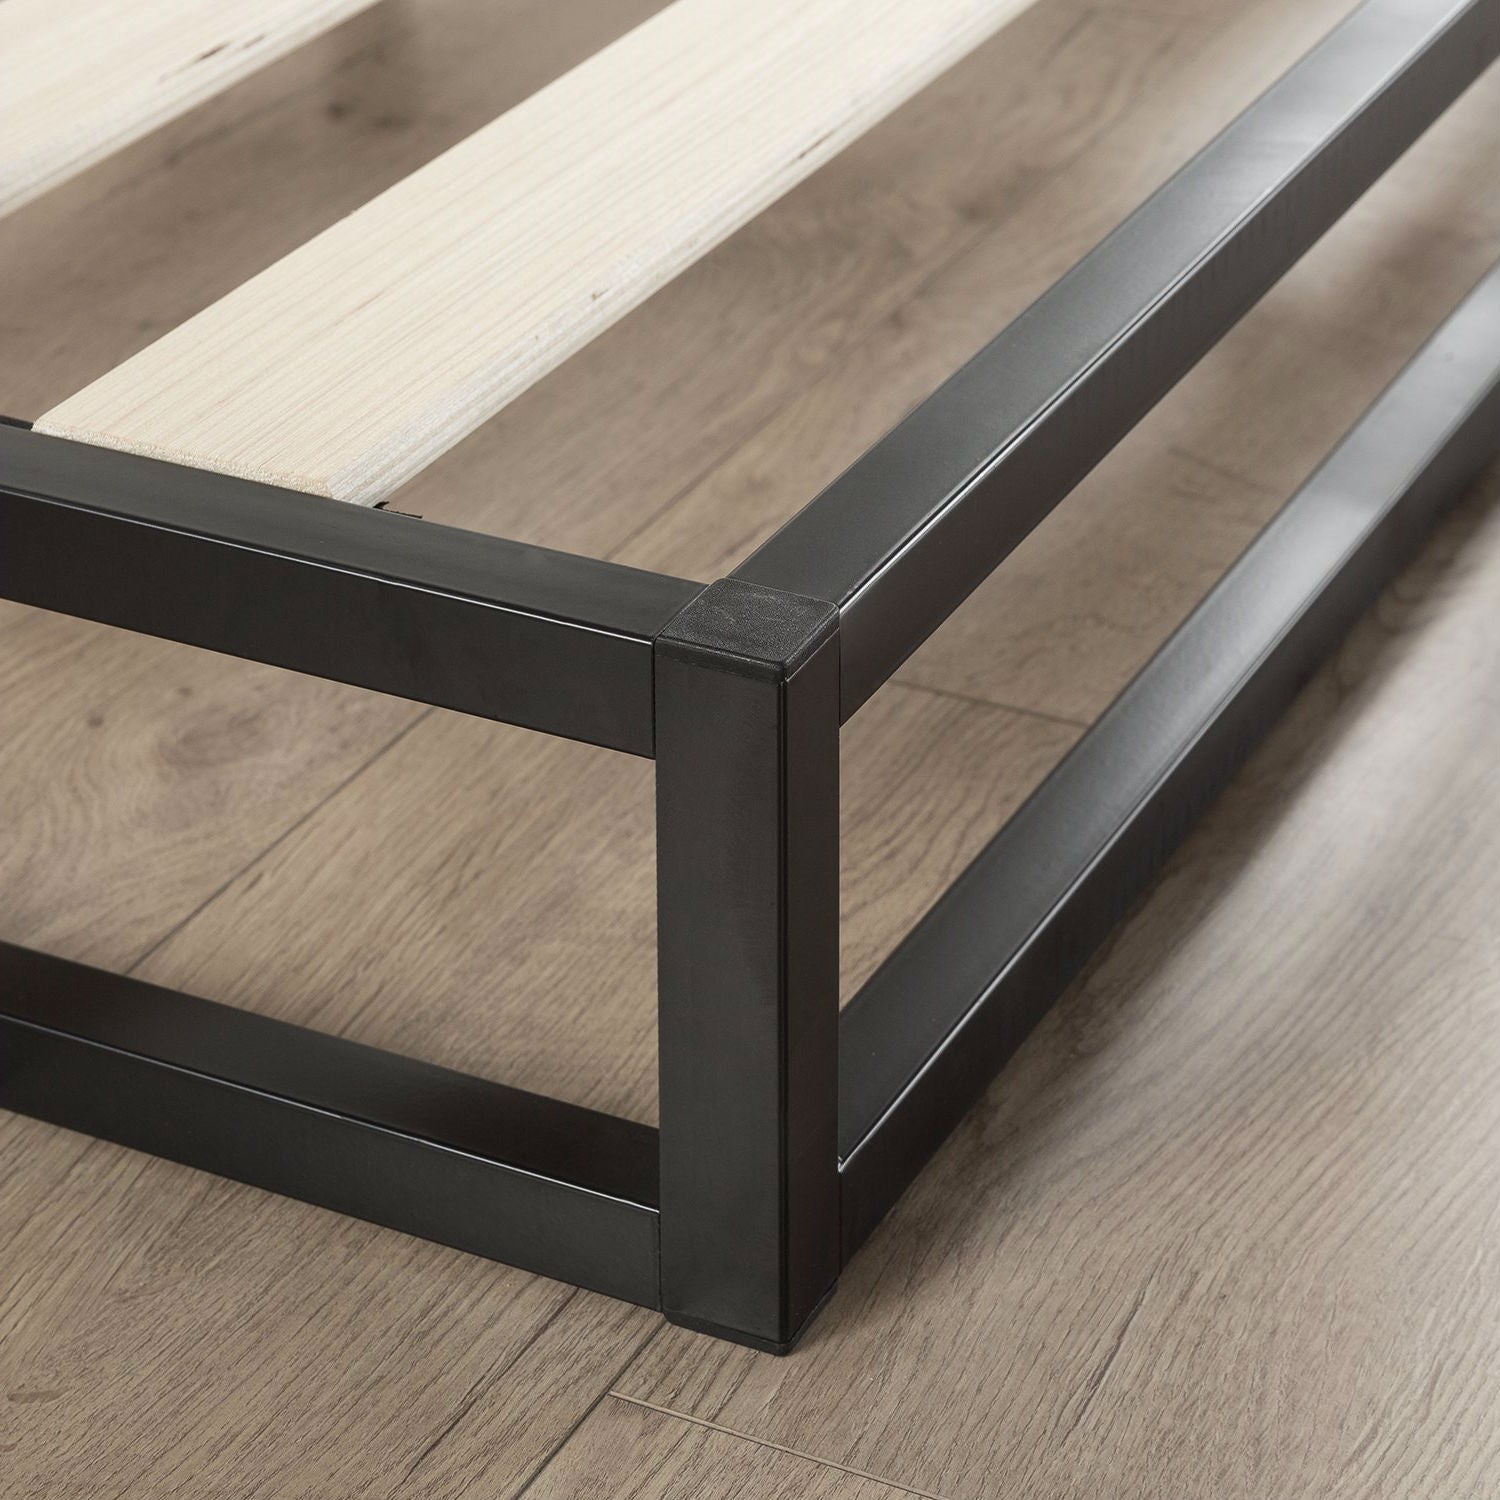 Low Profile Metal Platform Bed Frame, 6 Inch Platform Bed Frame